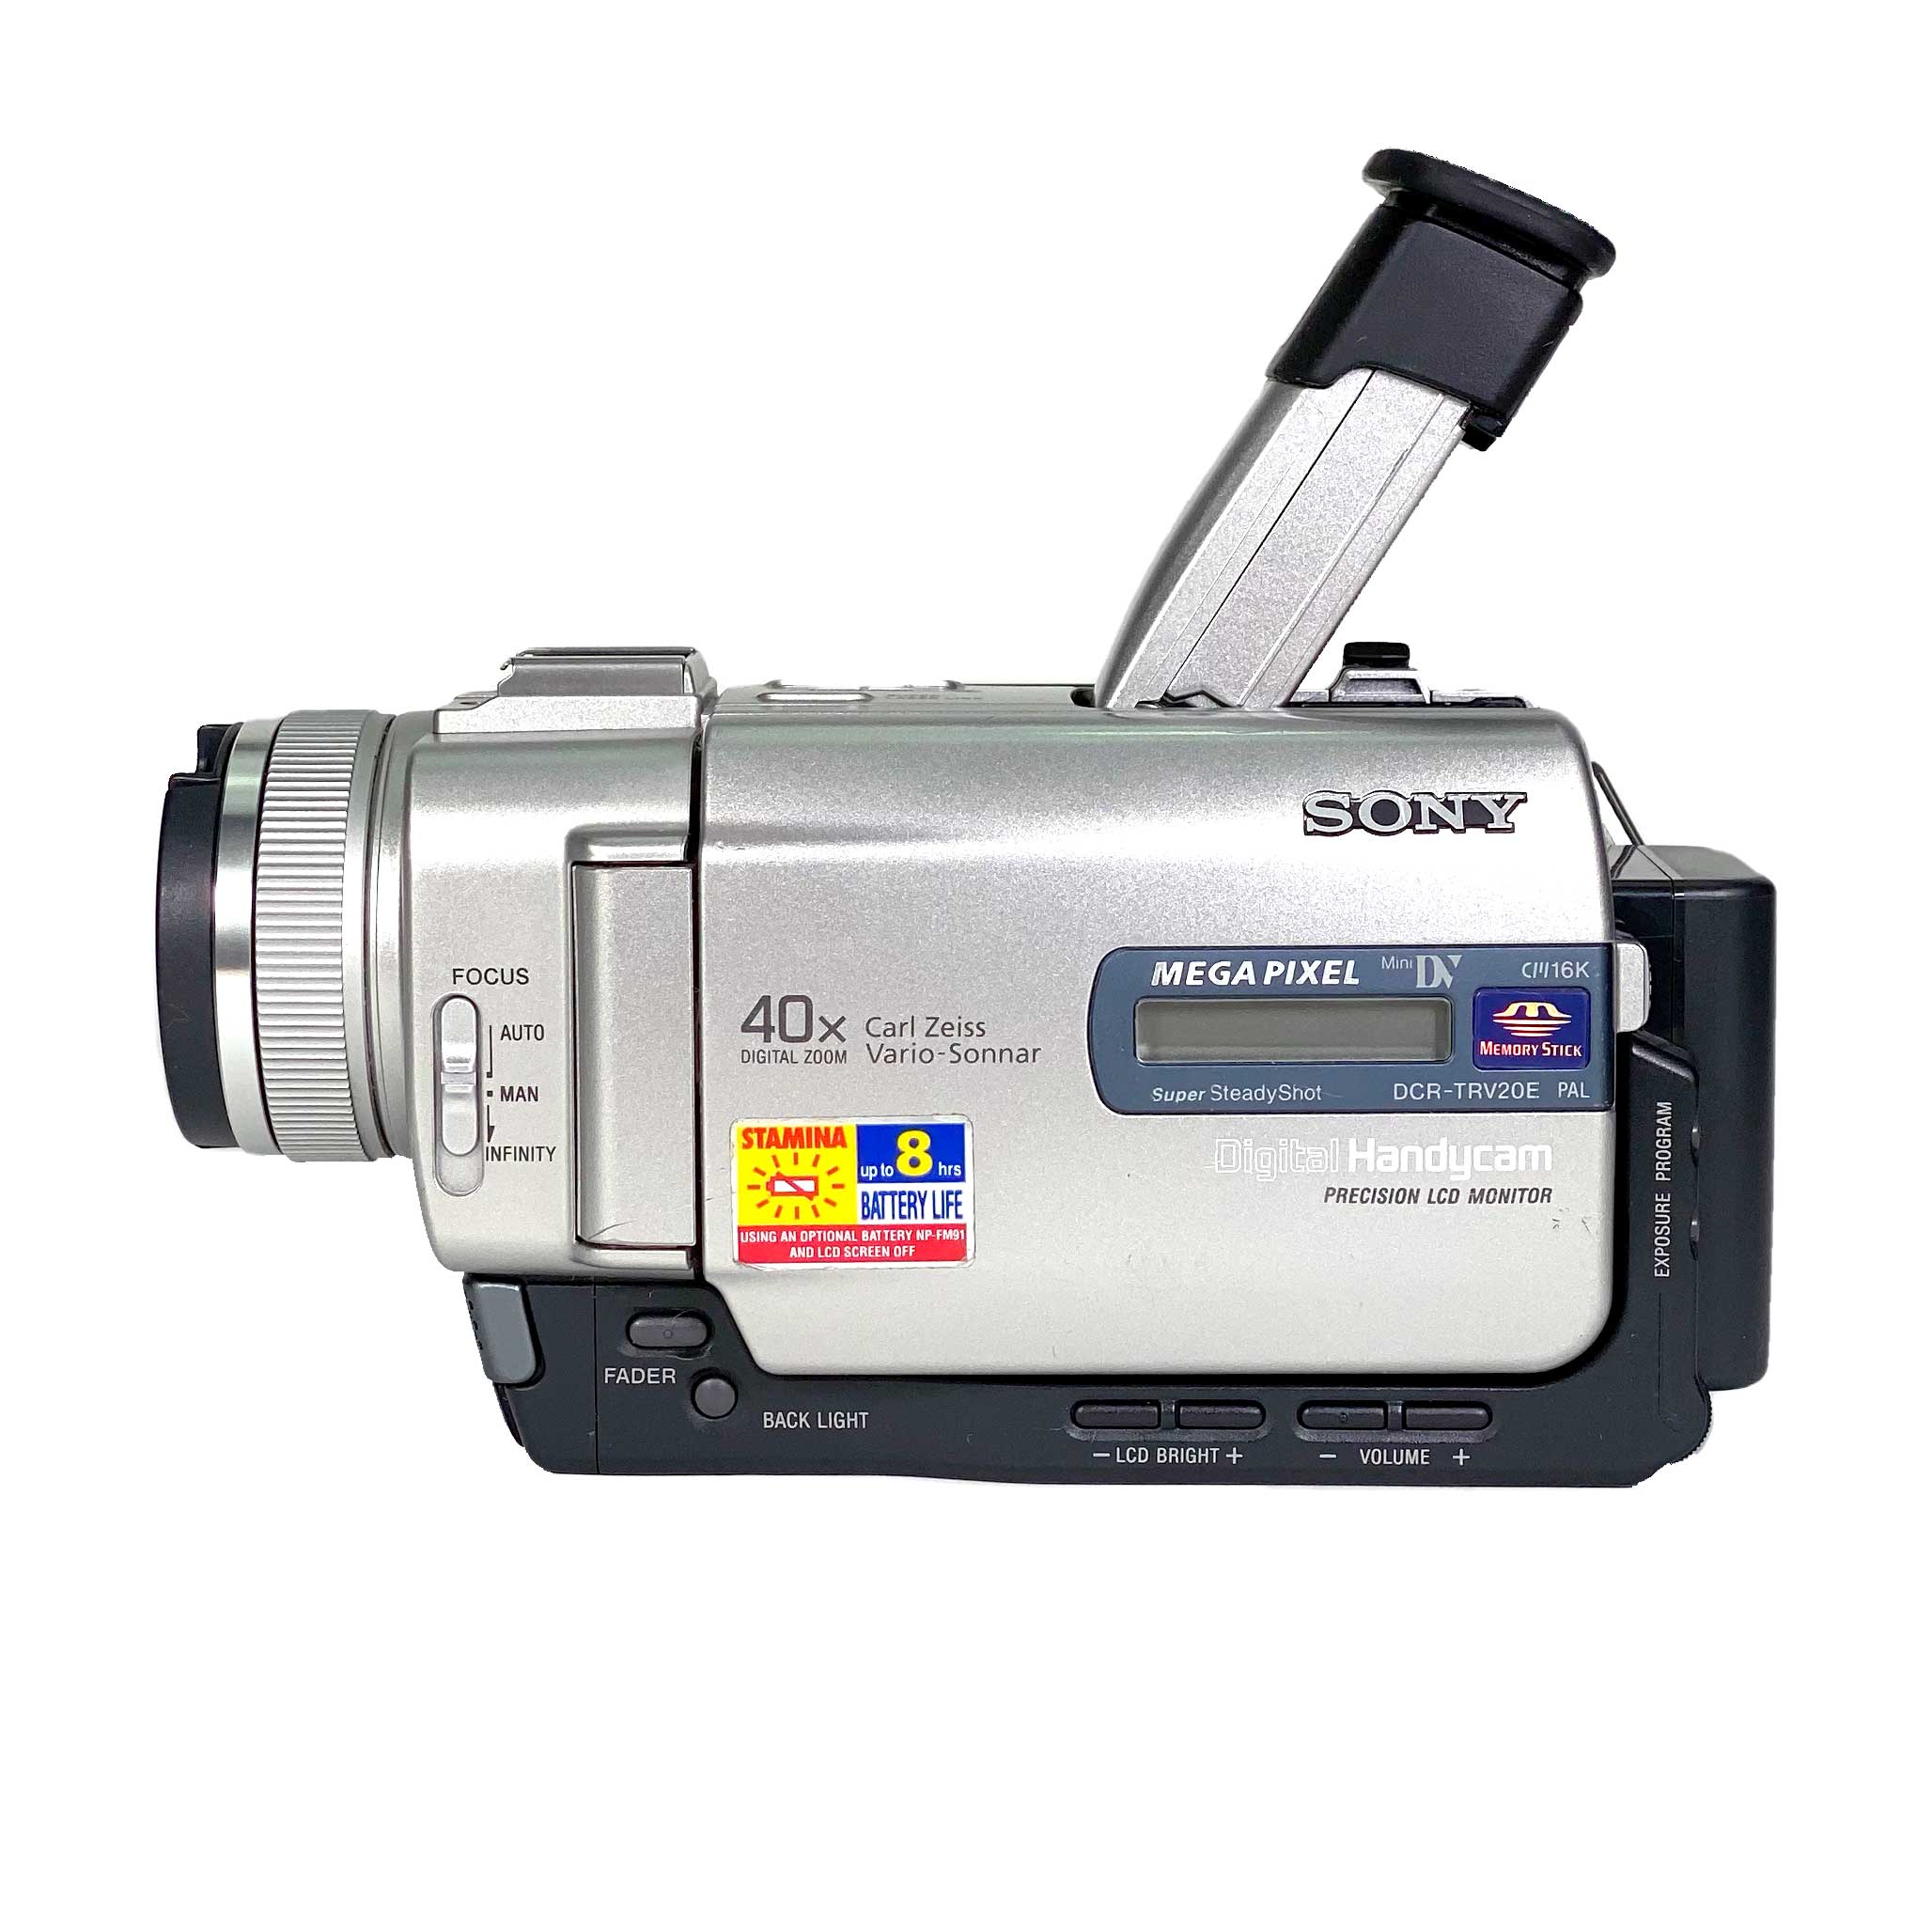 SONY ソニー DCR-TRV20 デジタルビデオカメラレコーダー ハンディカム 